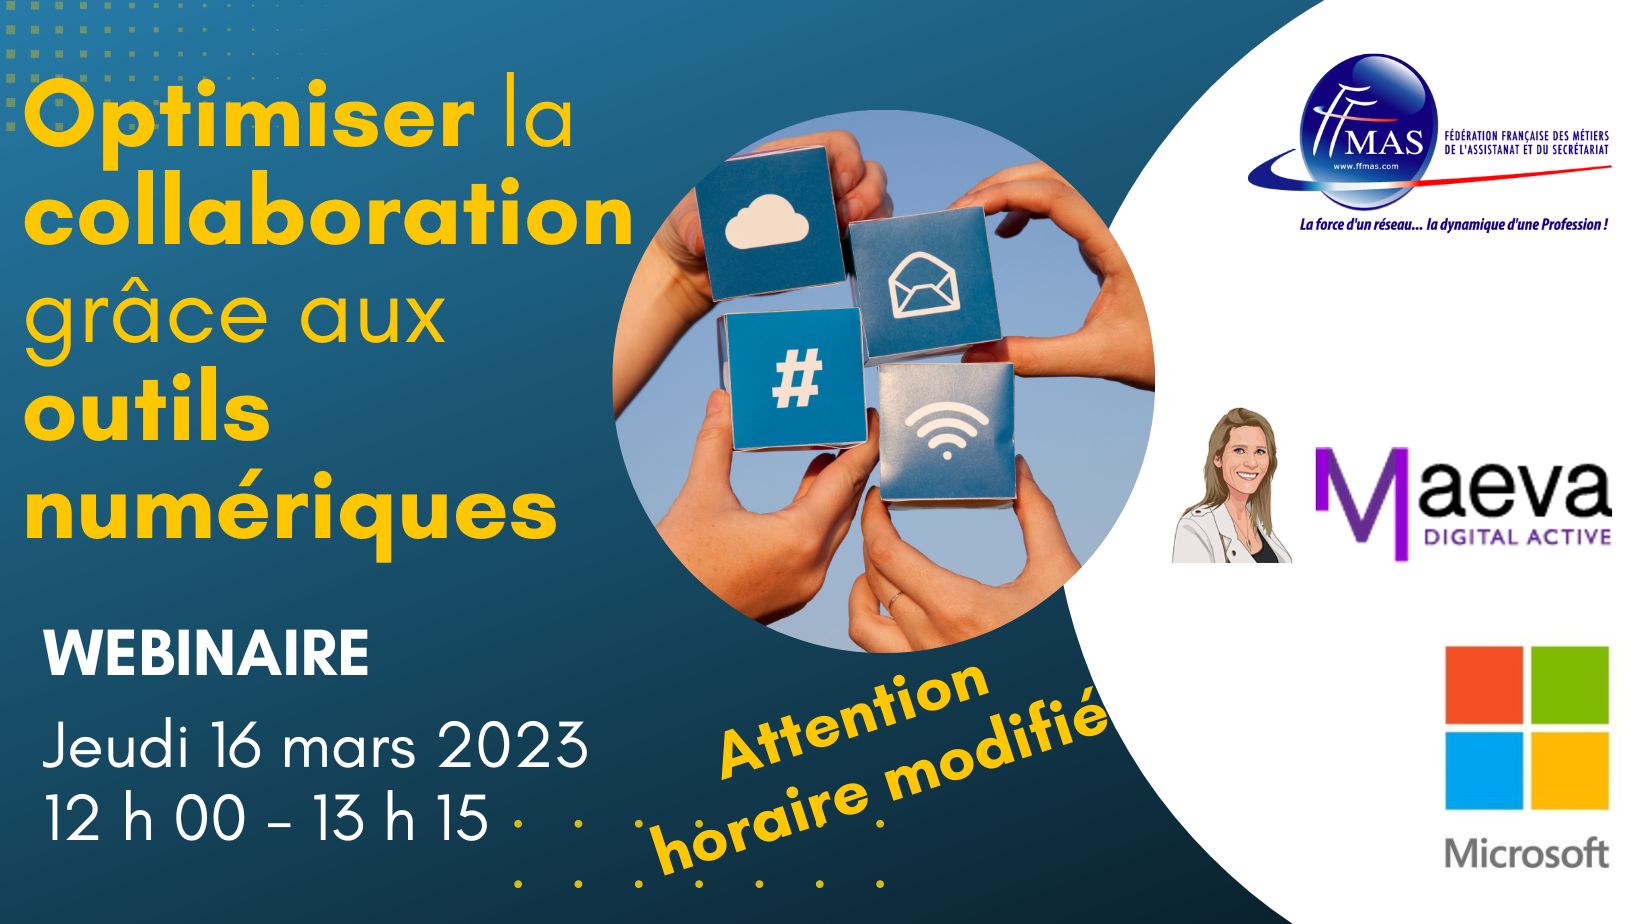 You are currently viewing Optimisez la collaboration grâce aux outils numériques, le 16 mars 2023